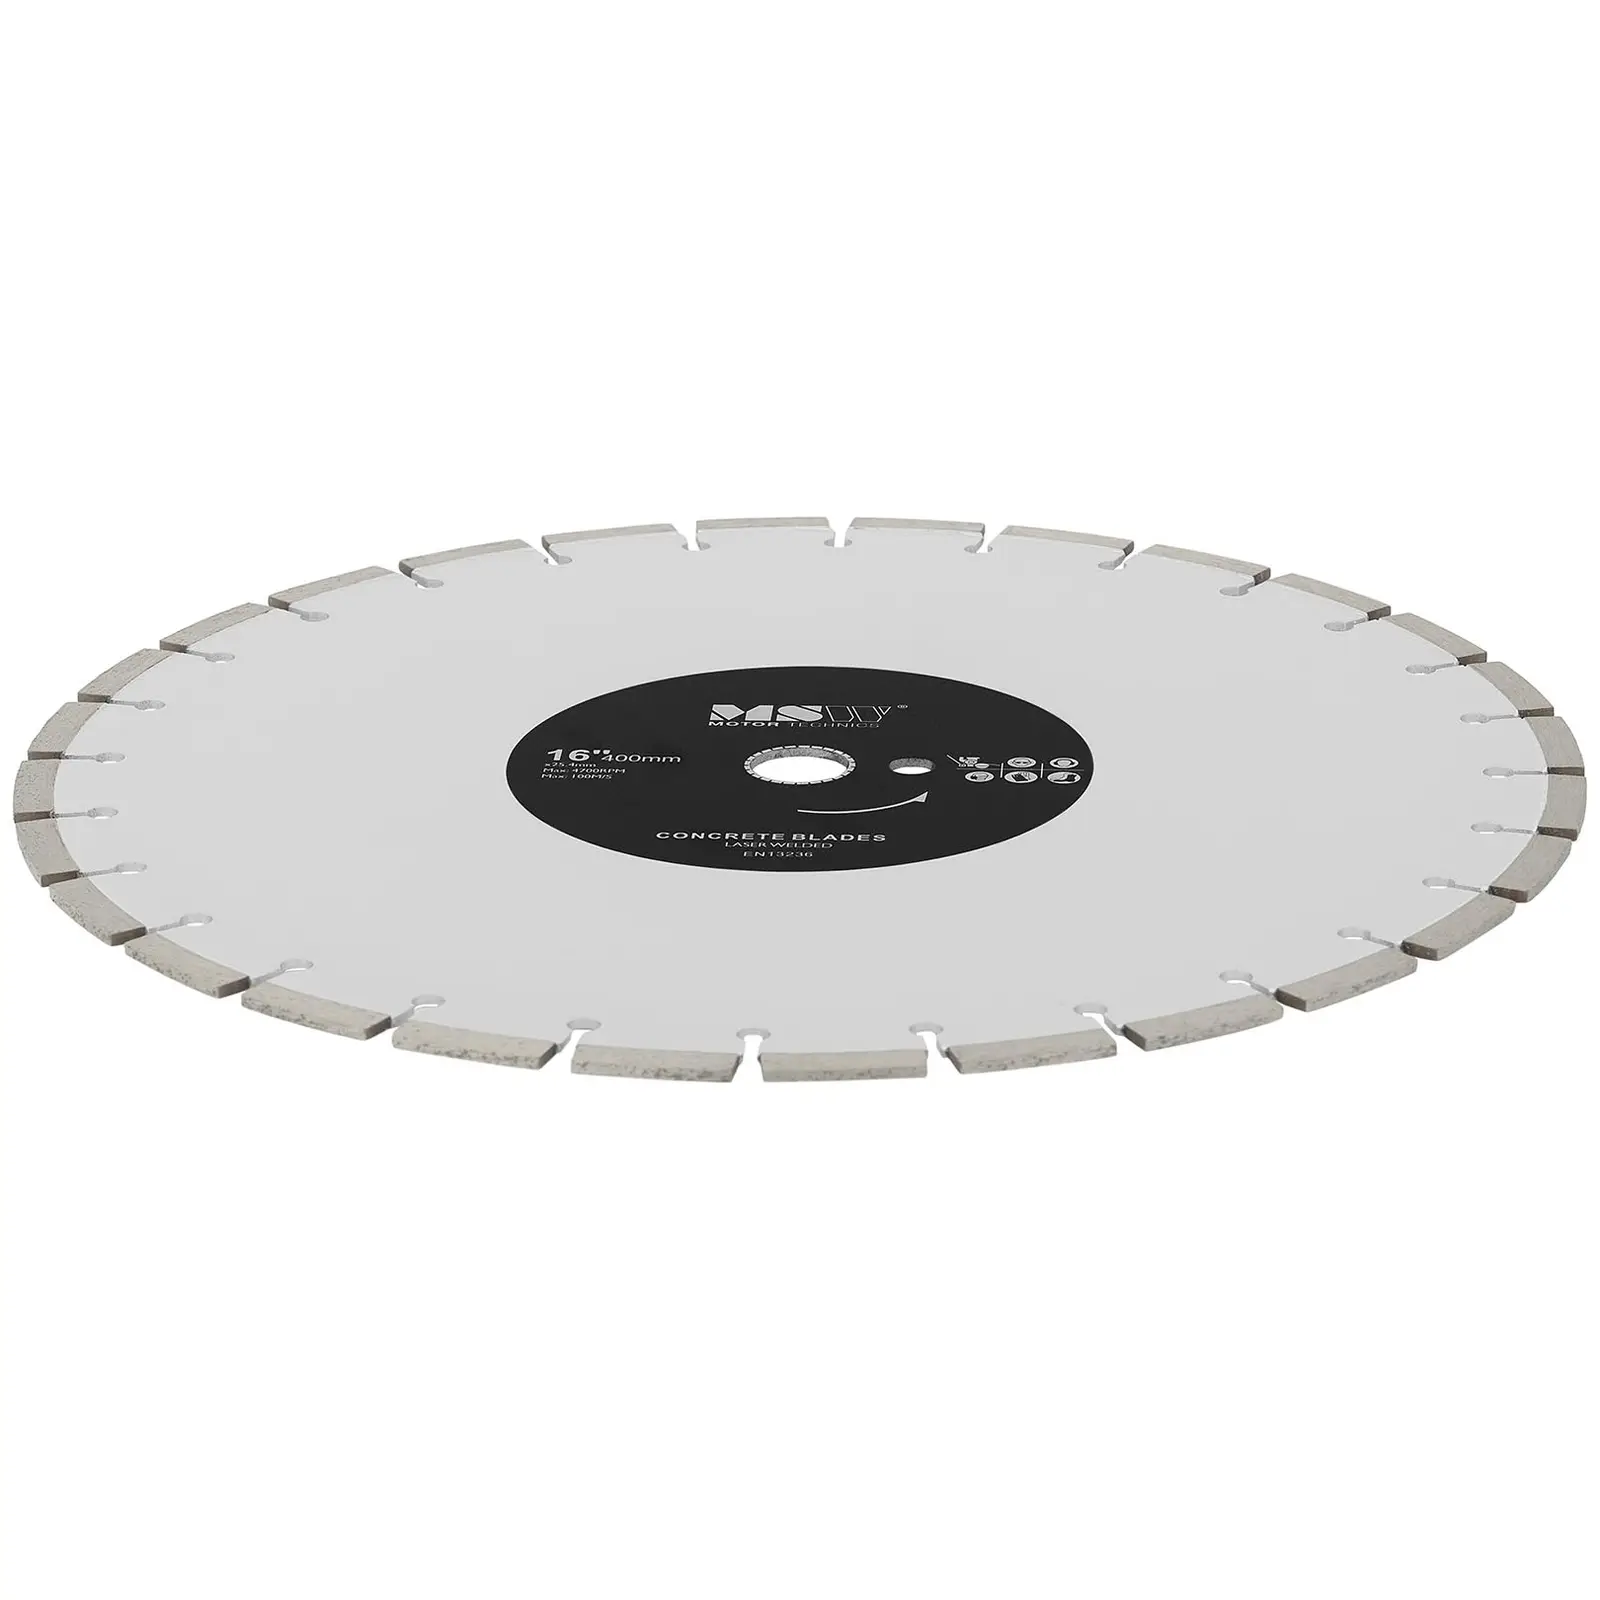 Disco de corte de betão - 400 mm